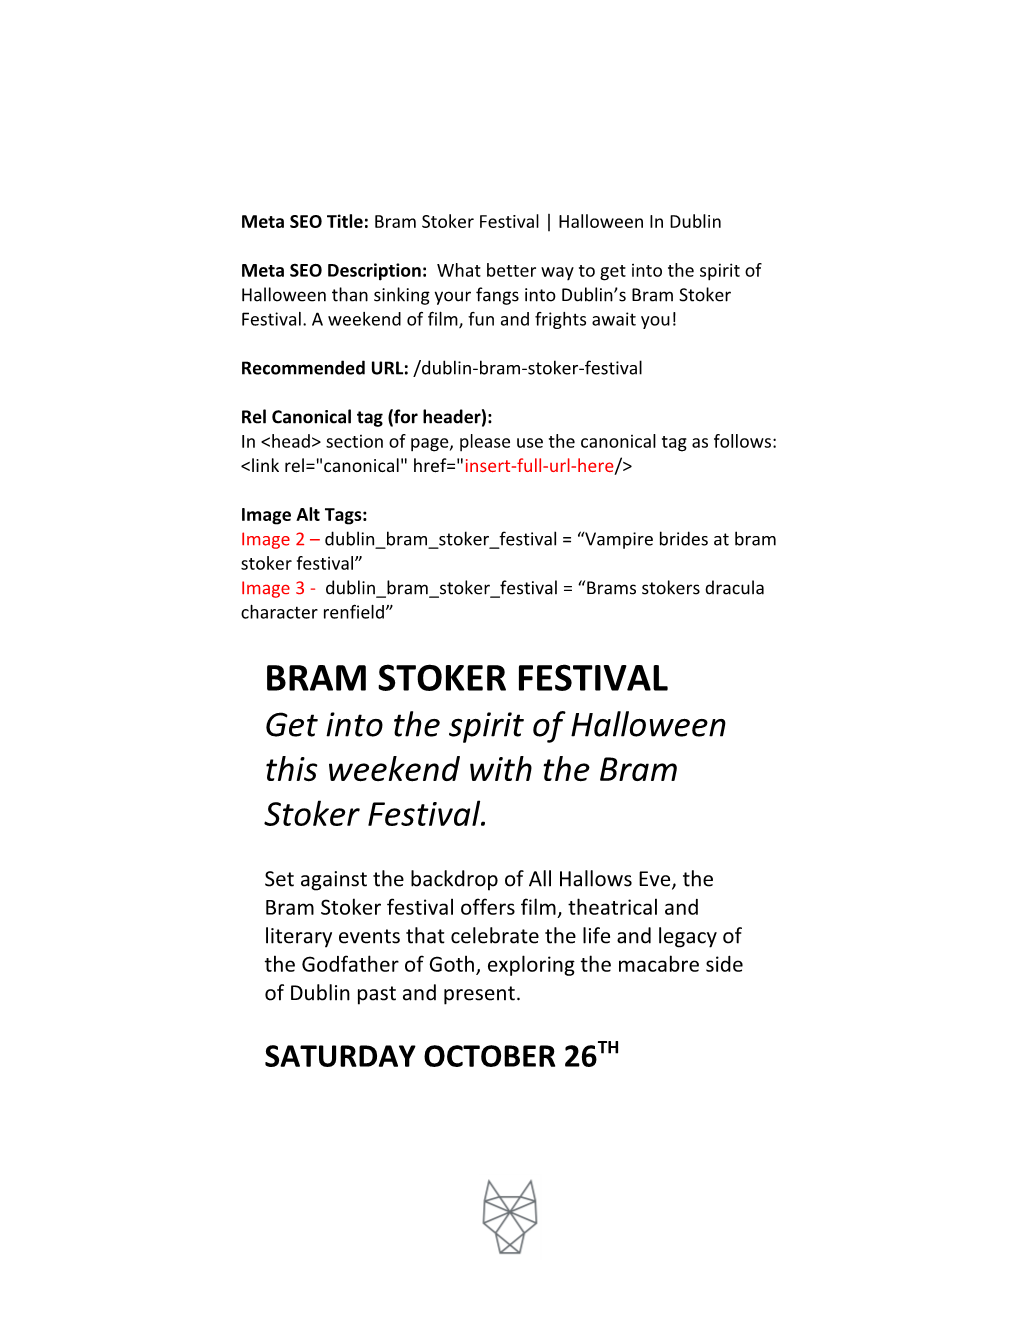 Meta SEO Title:Bram Stoker Festival Halloween in Dublin